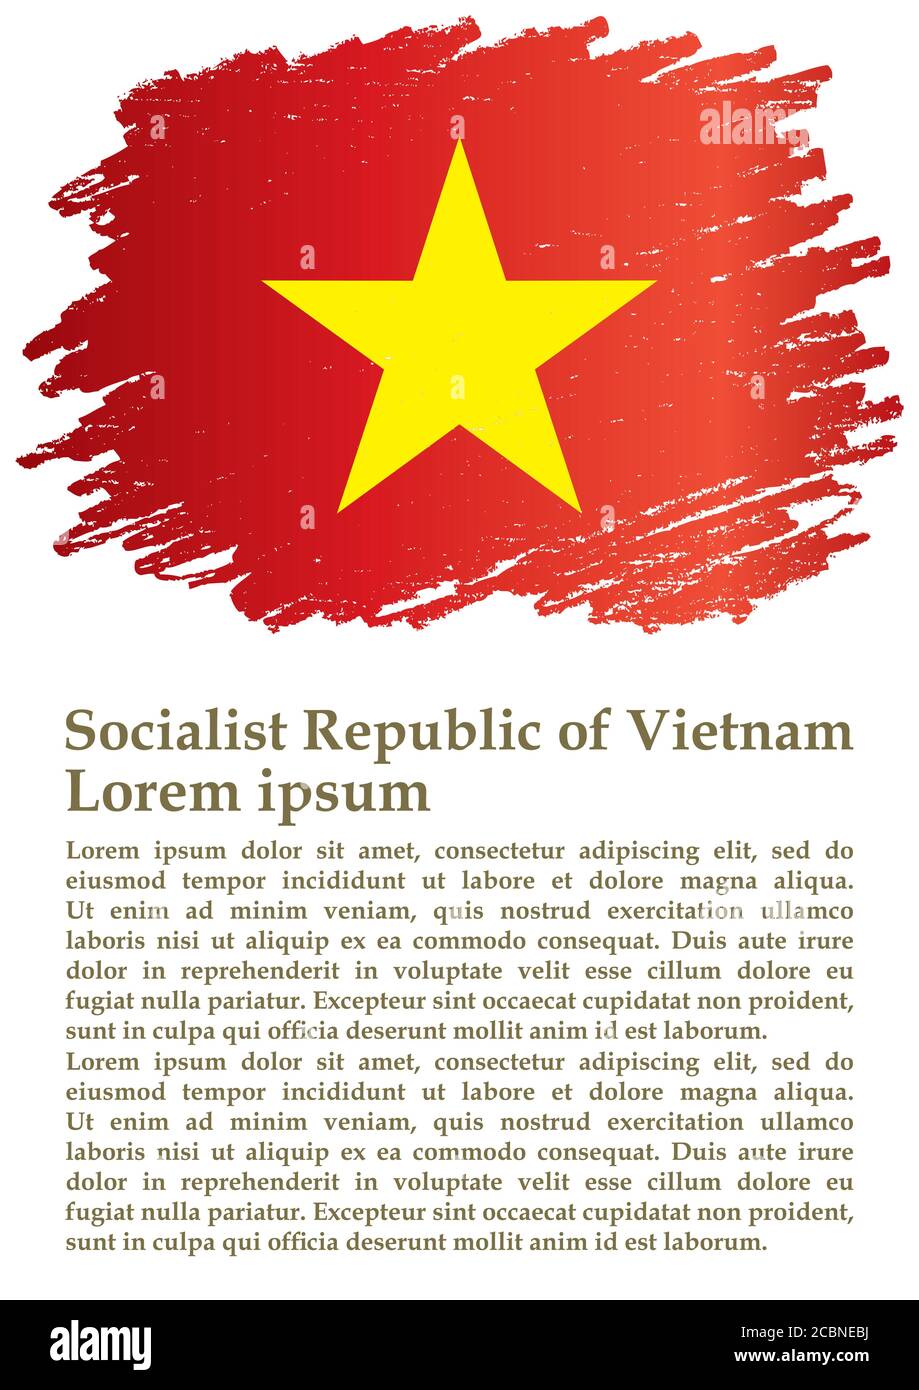 Drapeau du Vietnam, République socialiste du Vietnam, modèle de conception de prix, document officiel avec le drapeau de la République socialiste du Vietnam. Illustration de Vecteur